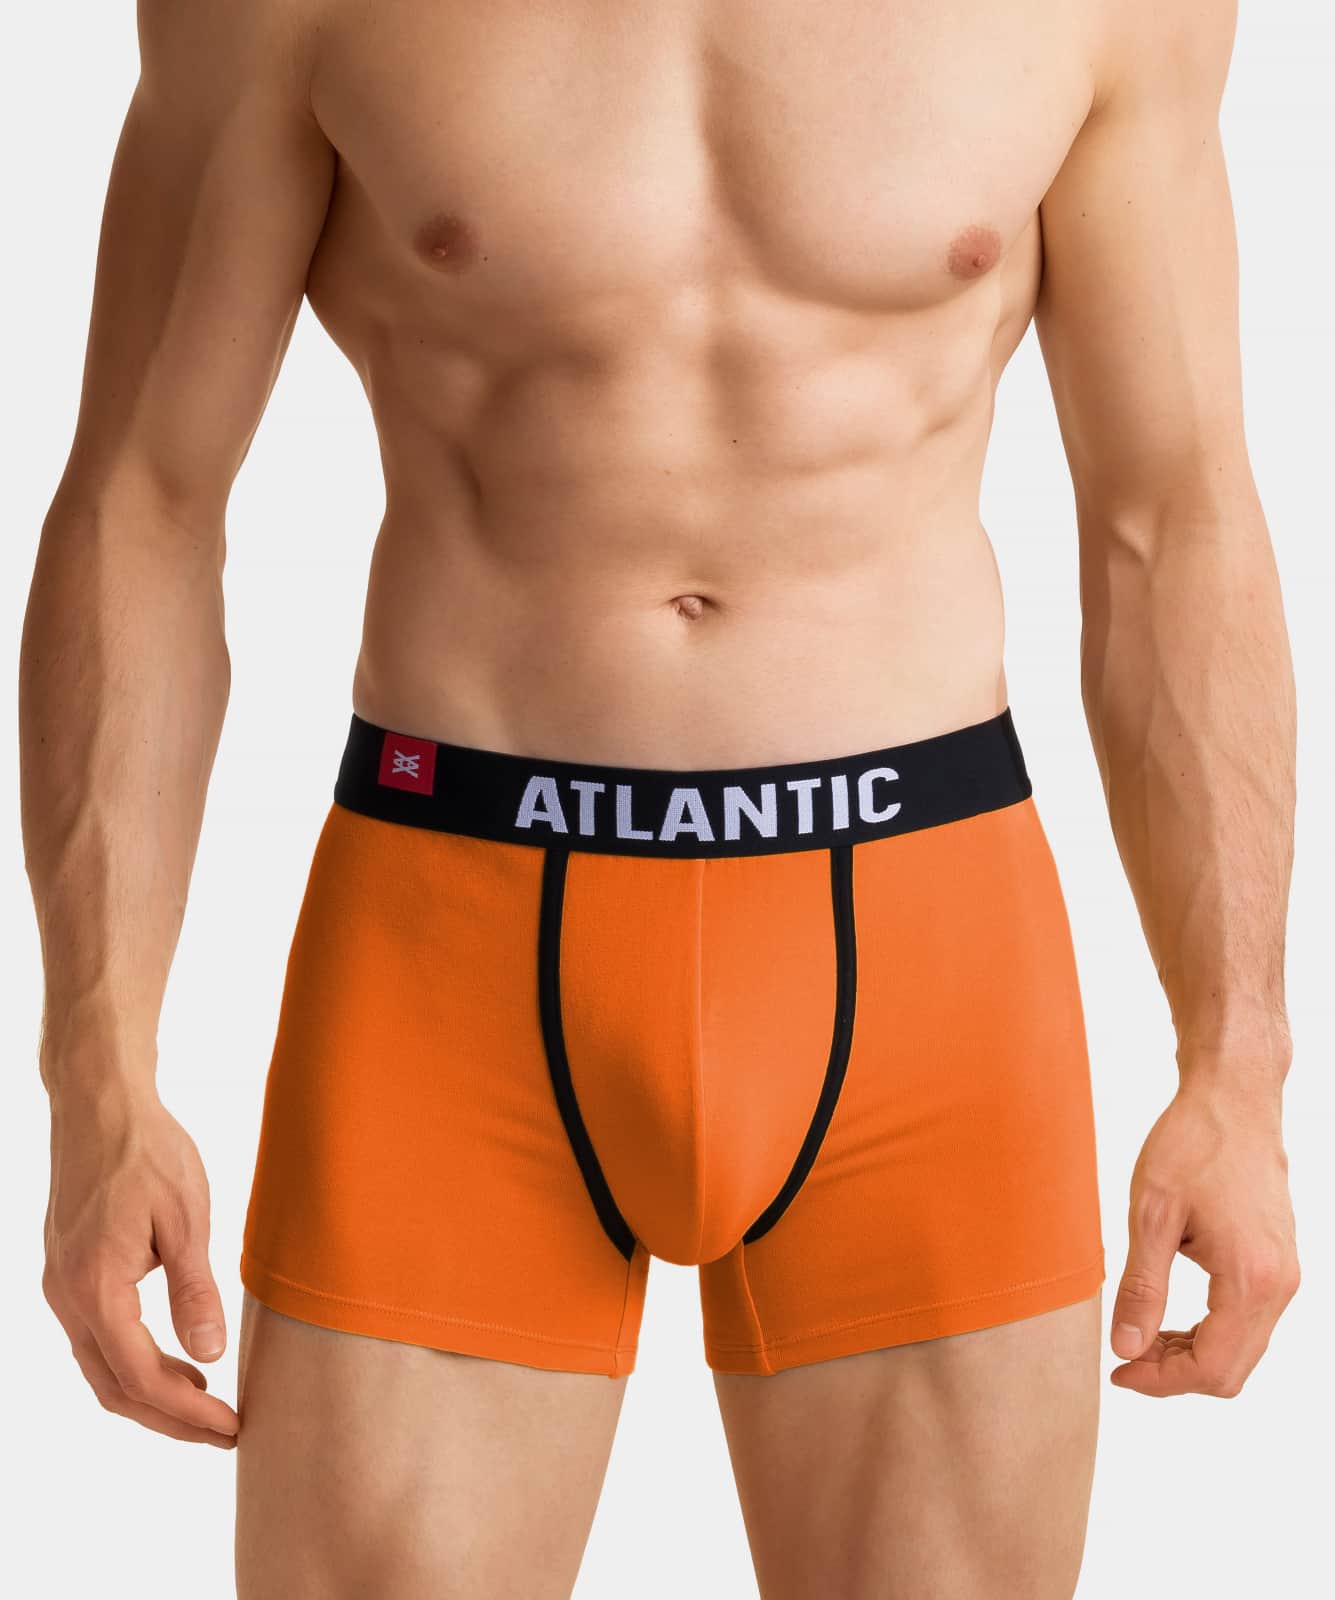 Atlantic мужские шорты Energy 3SMH-002, Оранжевый